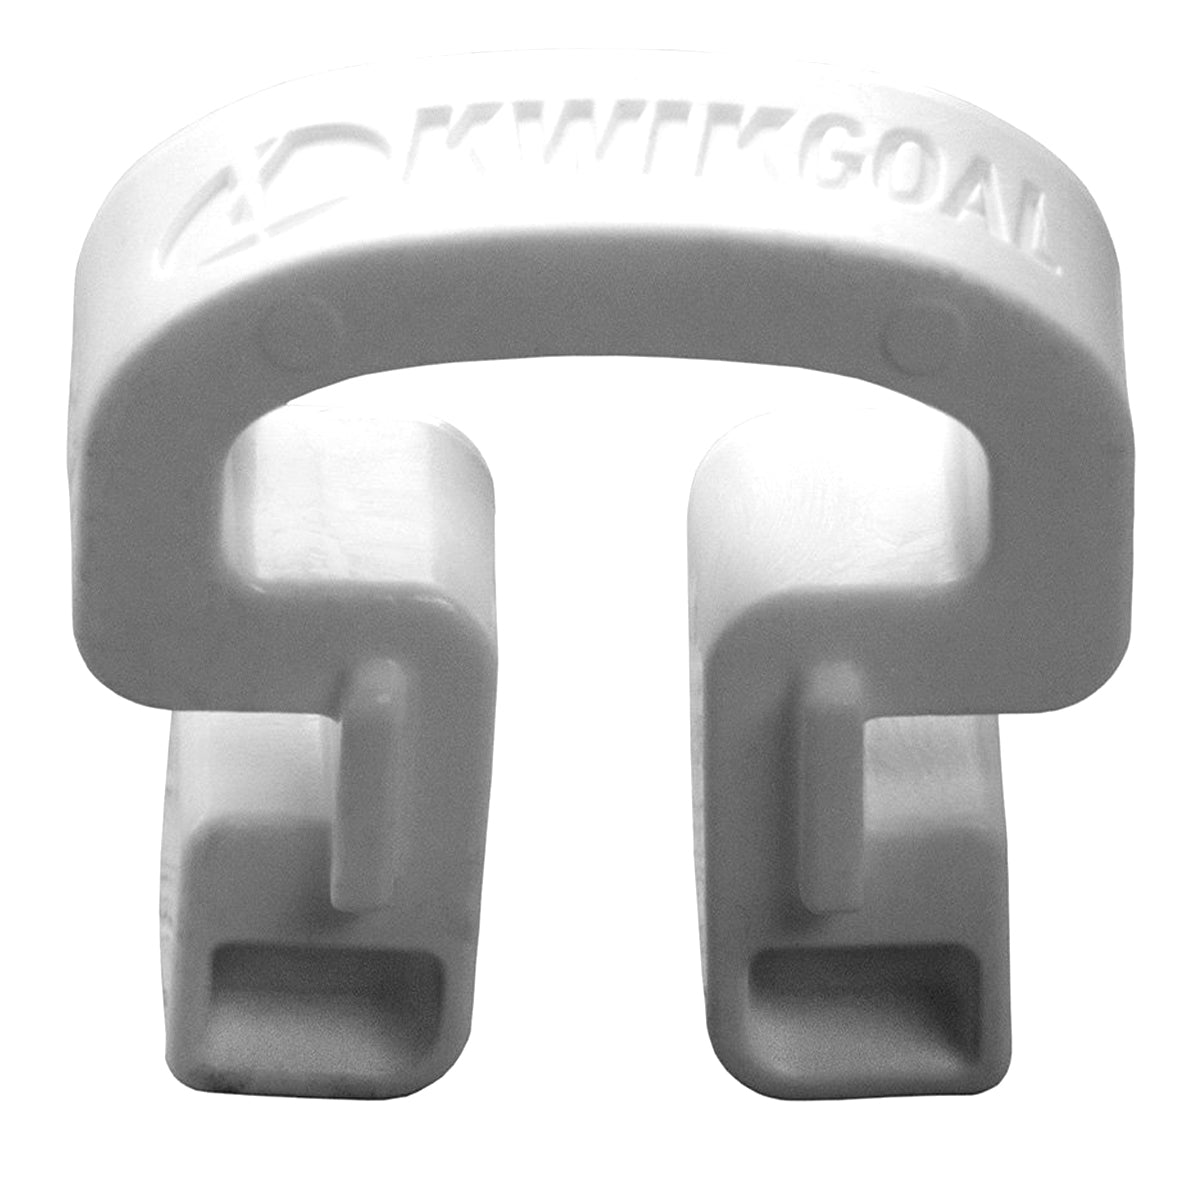 Kwikgoal Kwik Lock Net Clips - 100 Pack | 10B31 Goal accessories Kwikgoal White 